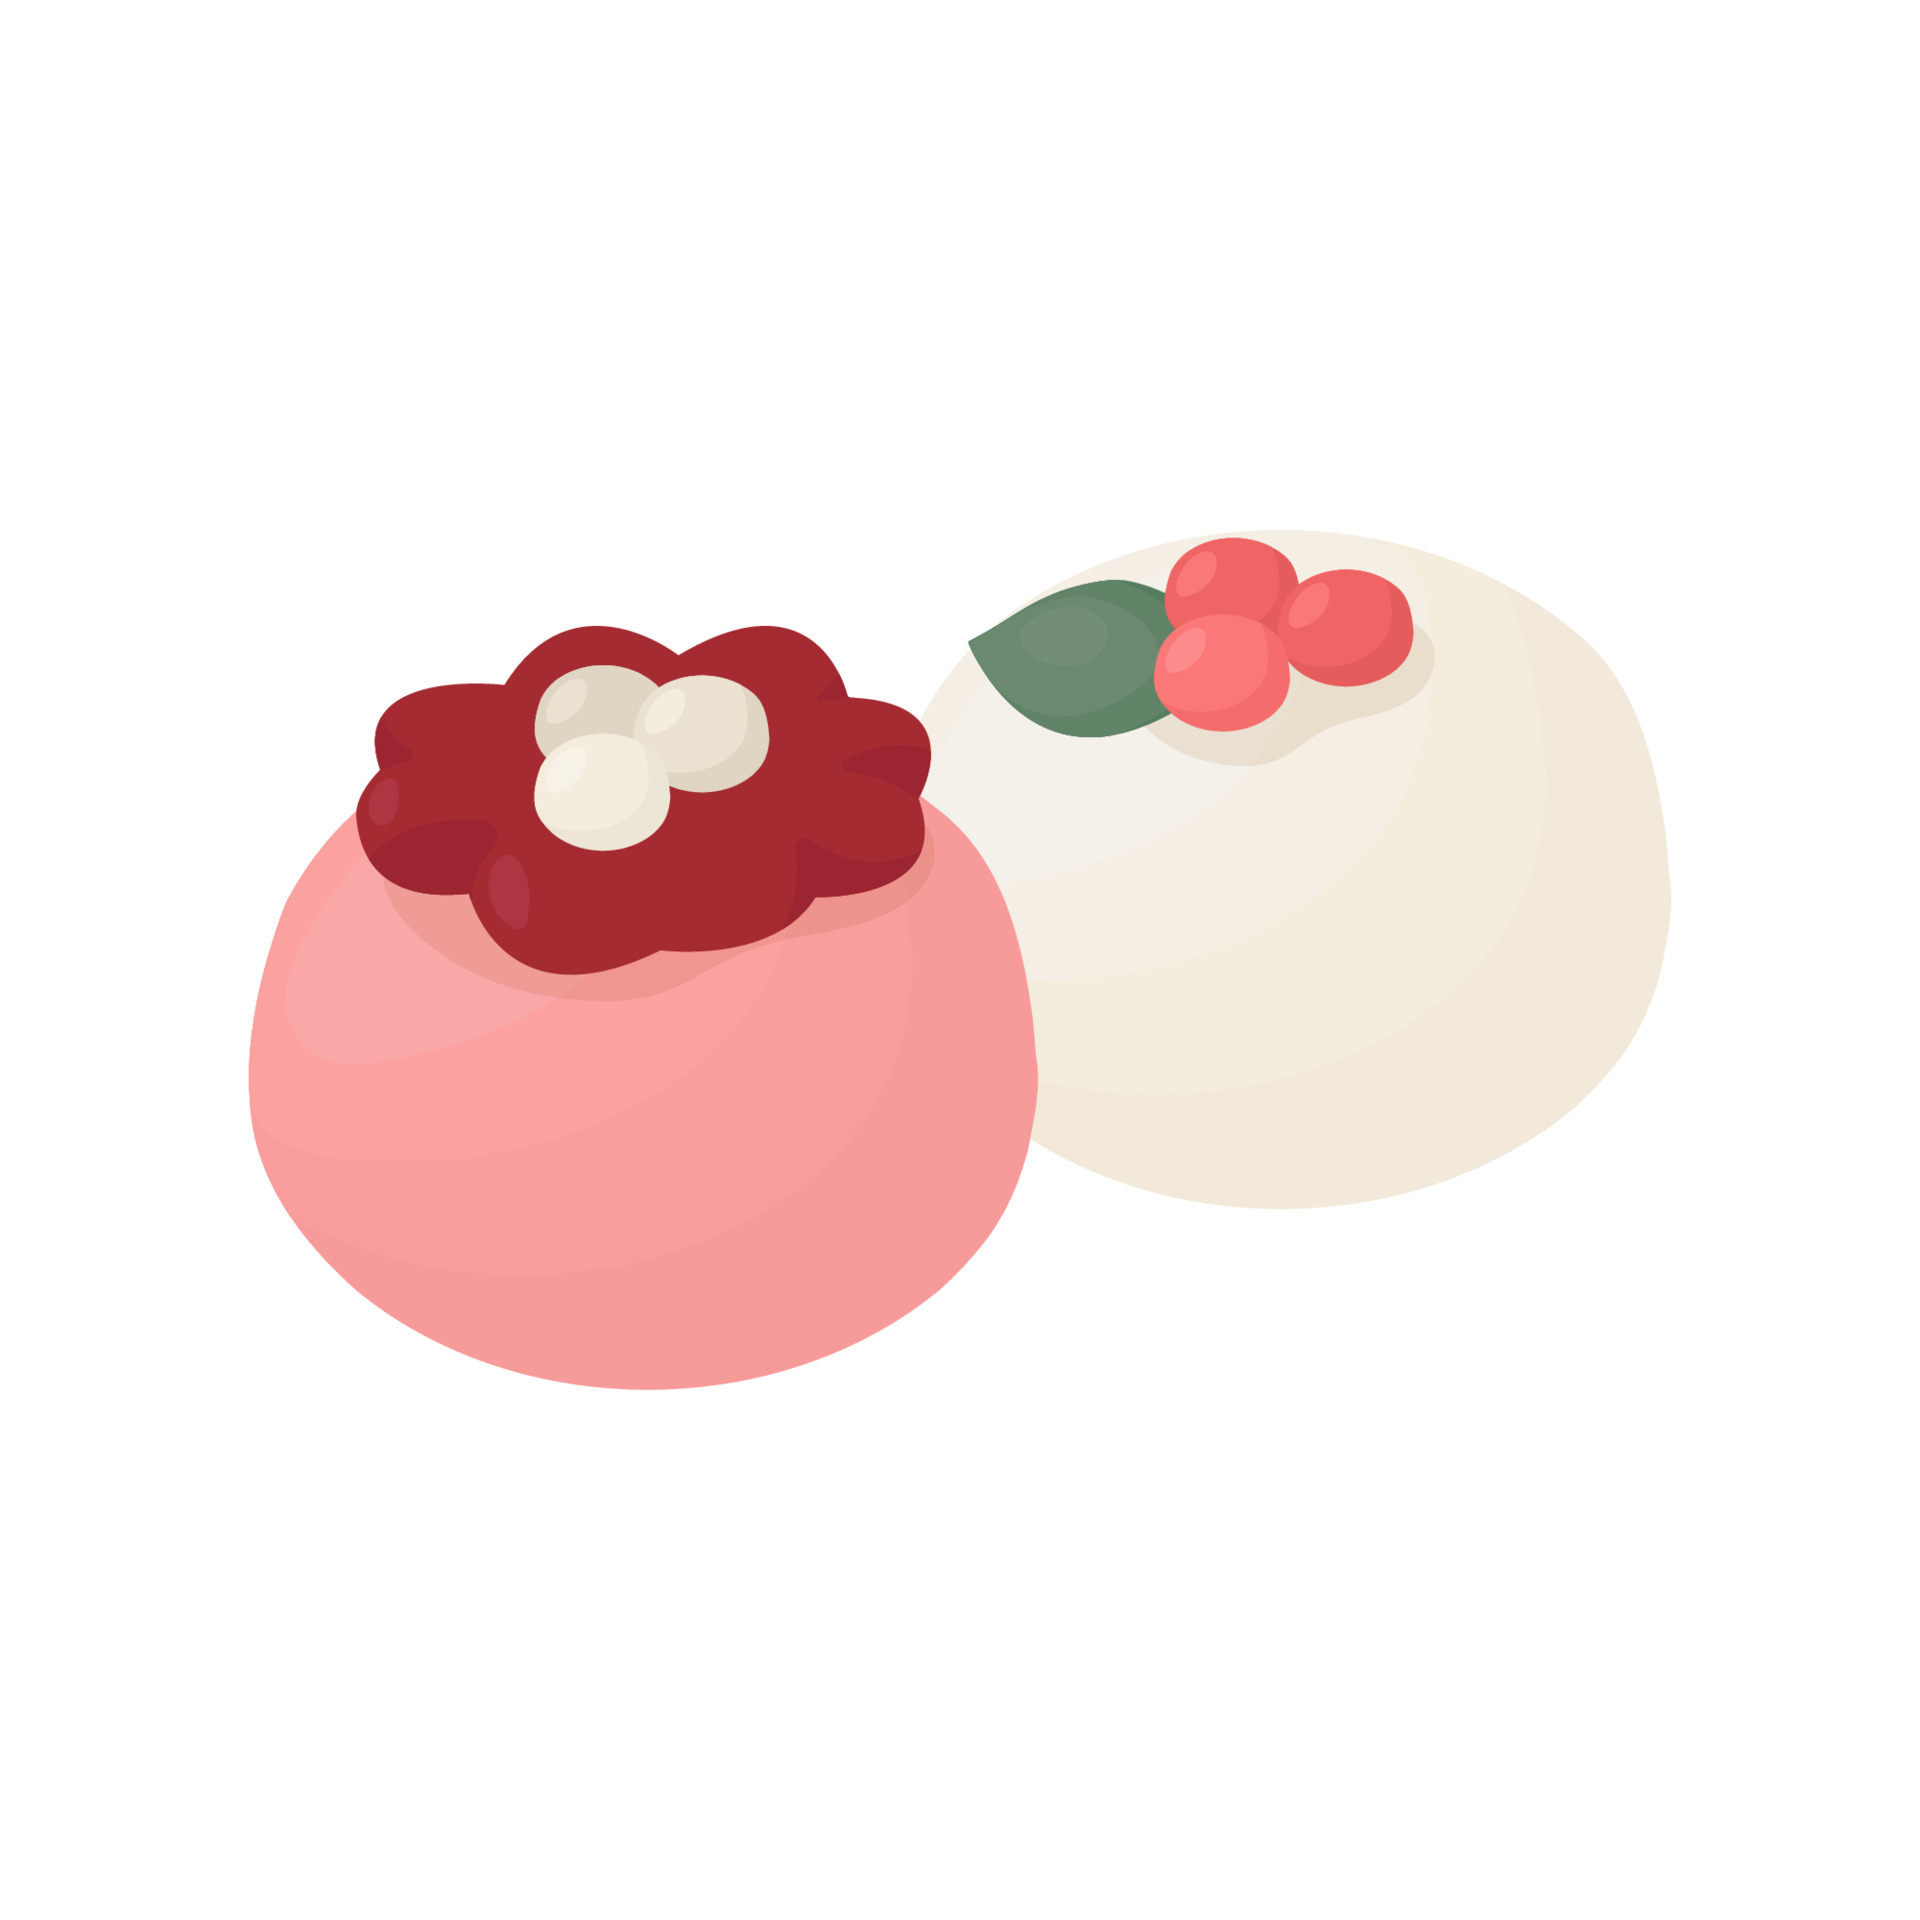 rosa e bianca wagashi, mochi, riso torta, tradizionale giapponese dolce  18915760 Arte vettoriale a Vecteezy